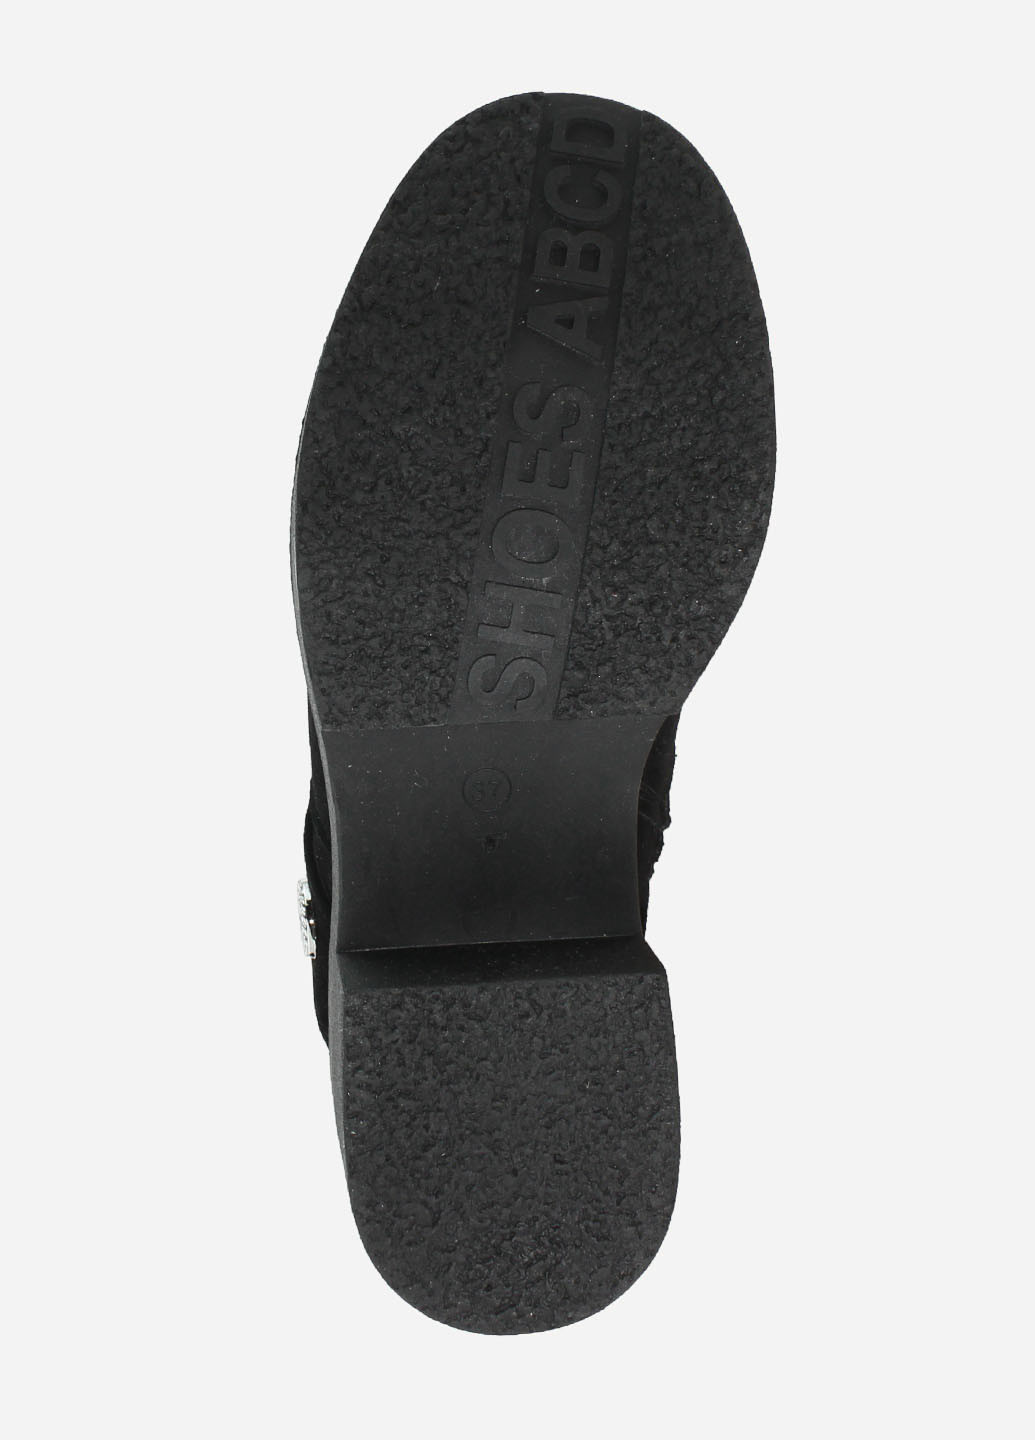 Зимние ботинки ra371-11 черный Alvista из натуральной замши